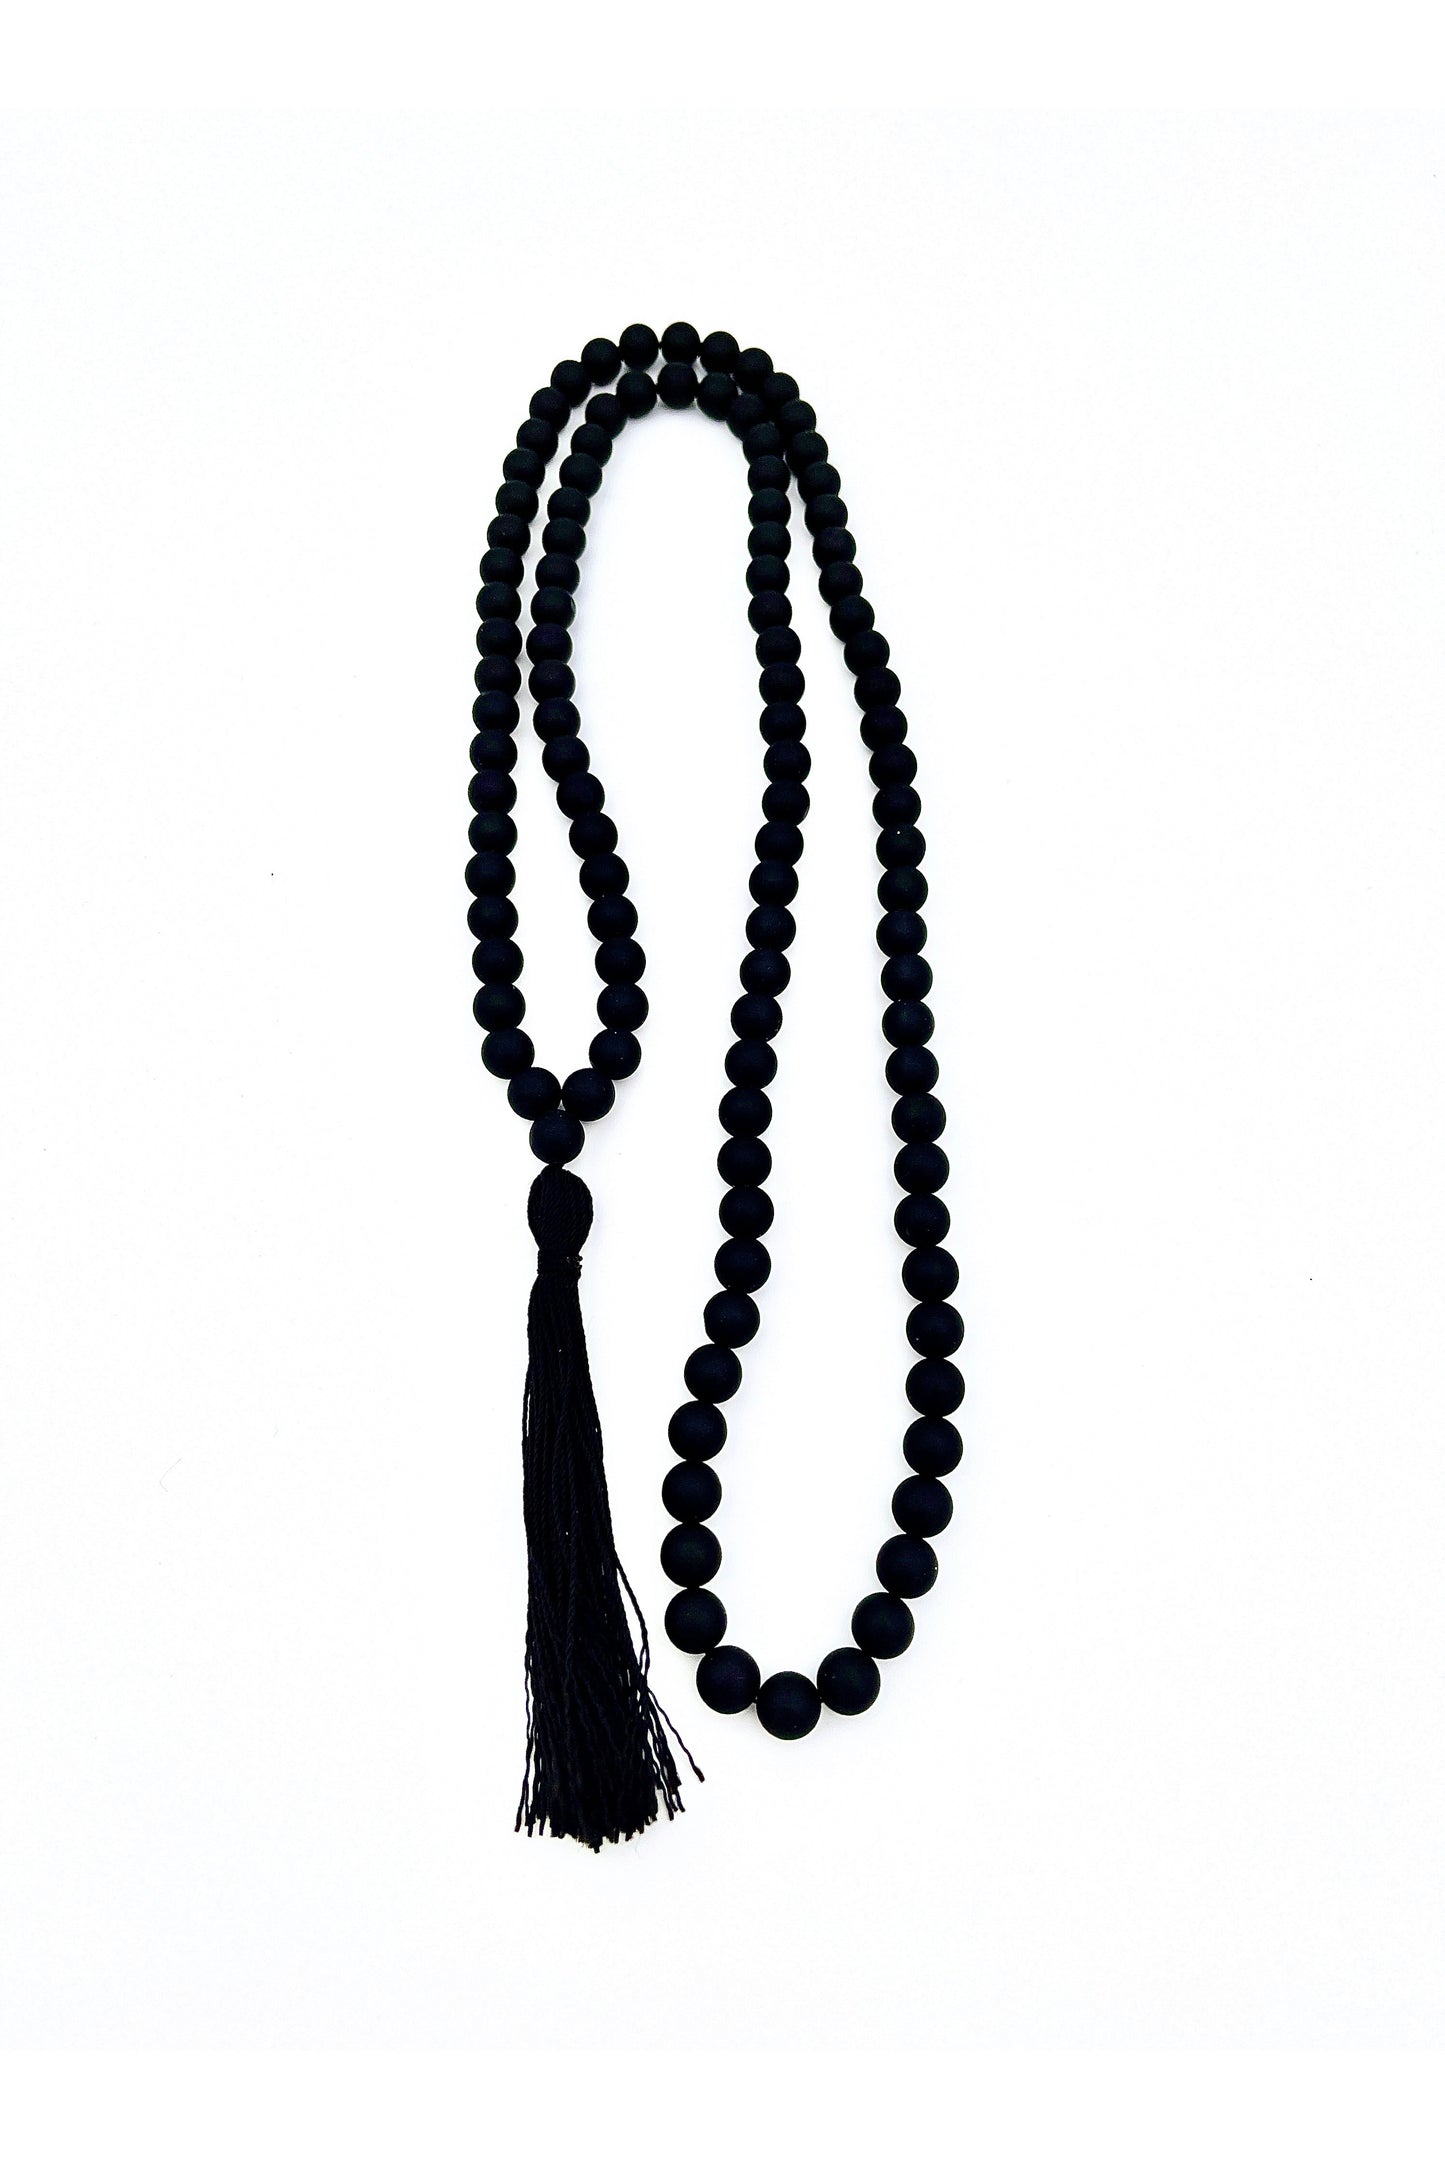 Zdravilna ogrlica iz dragega kamna svetega kadila bosvelije - velika mala 108 kroglic 48cm